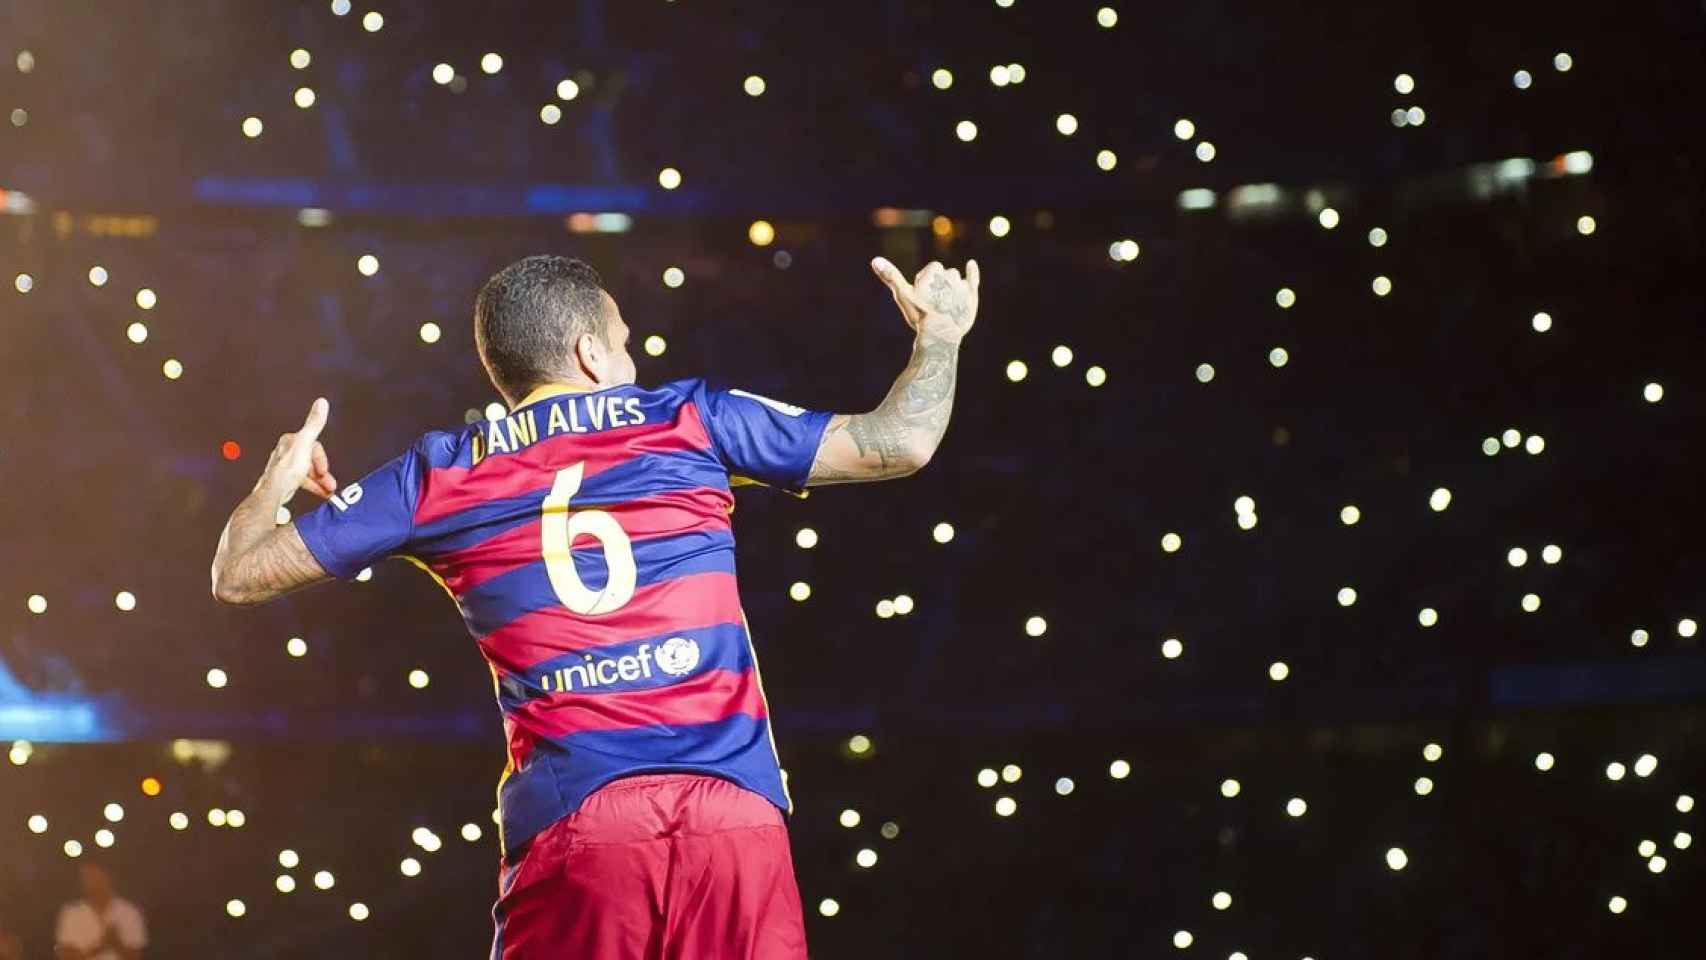 Dani Alves regresa al Barça para aportar su calidad y experiencia / FCB